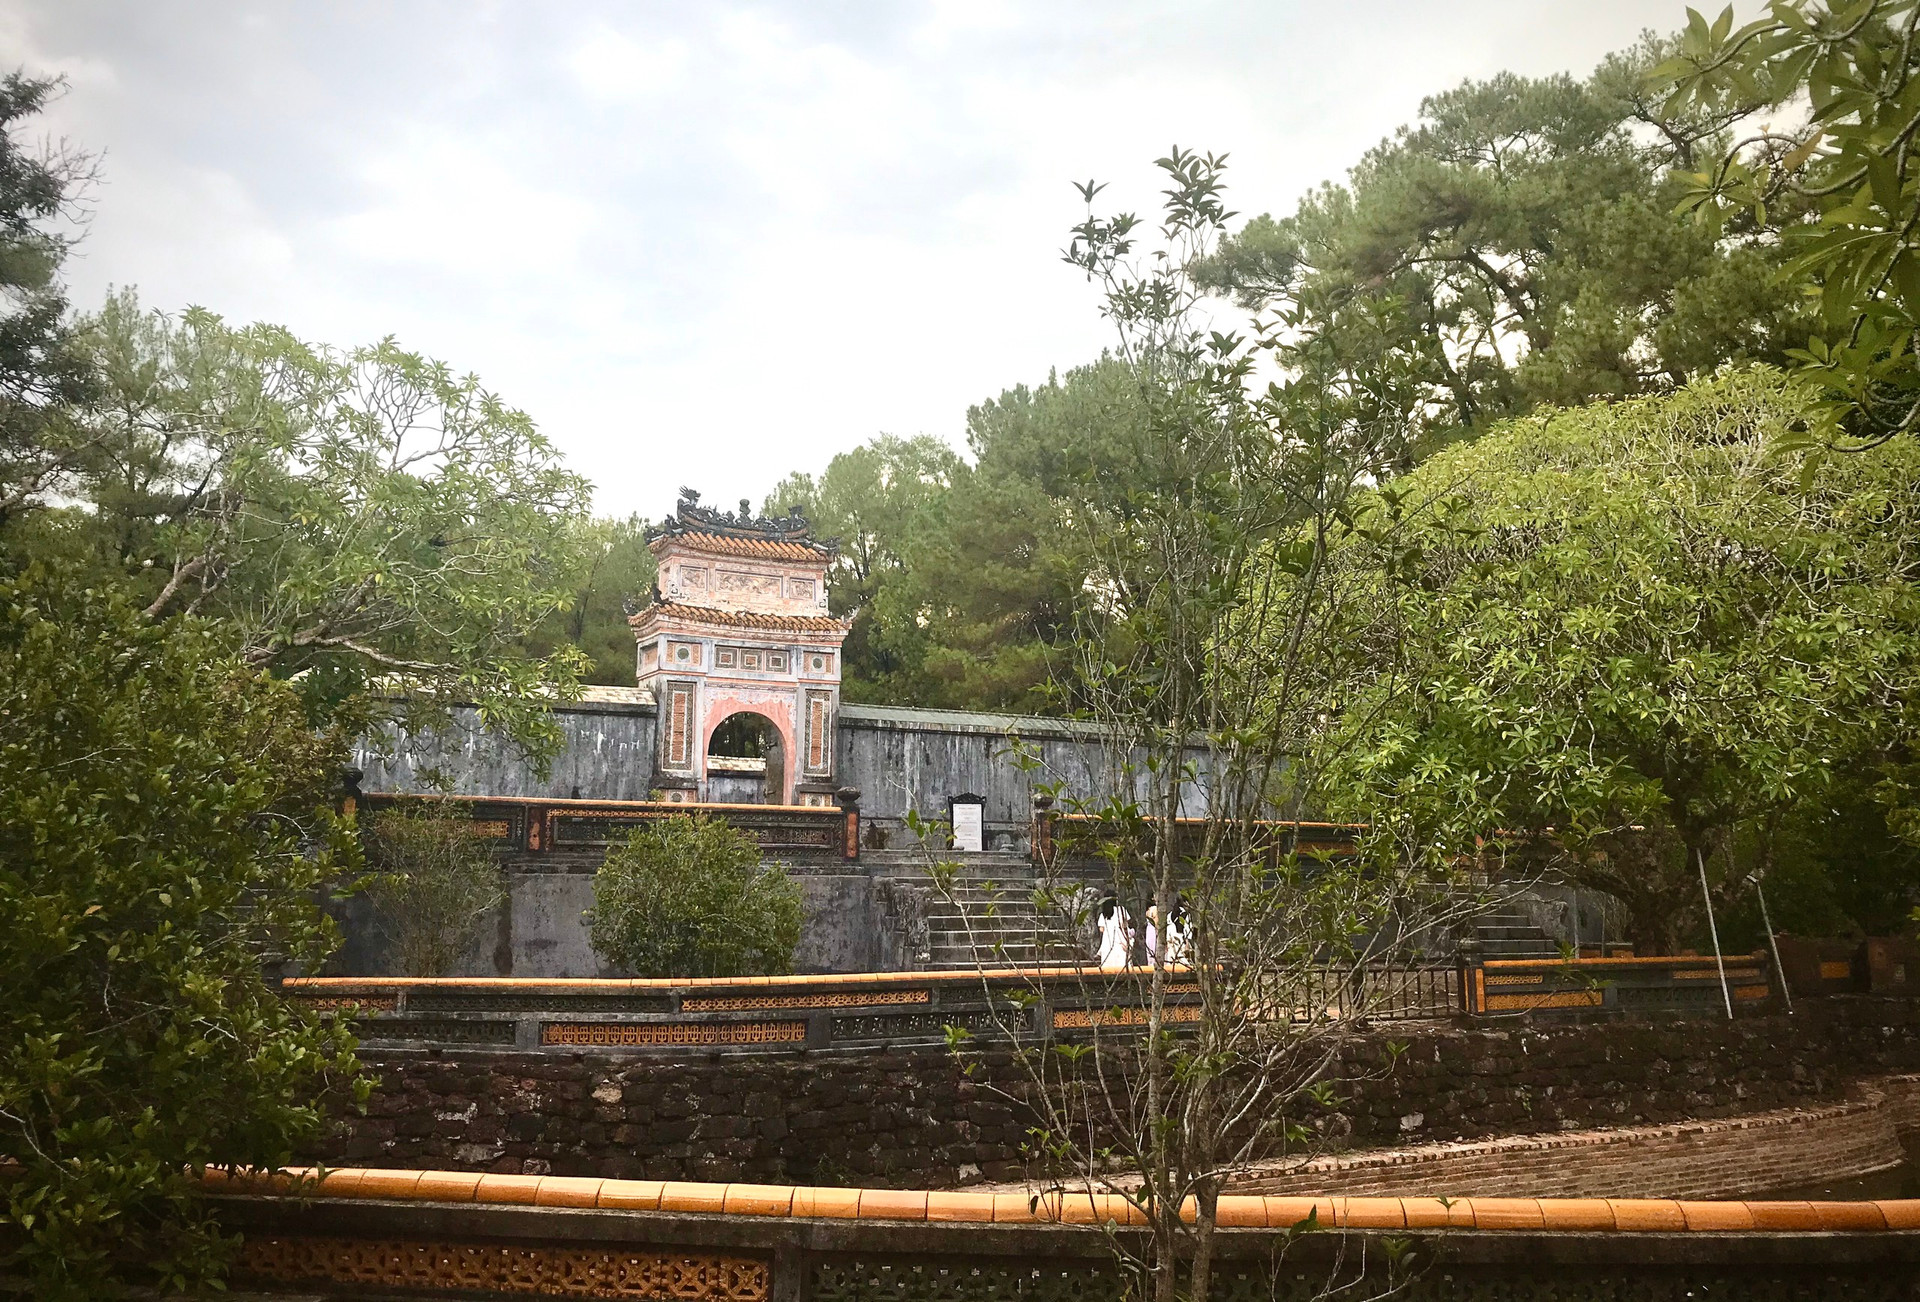 Tuổi trẻ kiều bào khám phá những kiến trúc độc đáo của lăng tẩm nhà Nguyễn tại Huế - ảnh 4